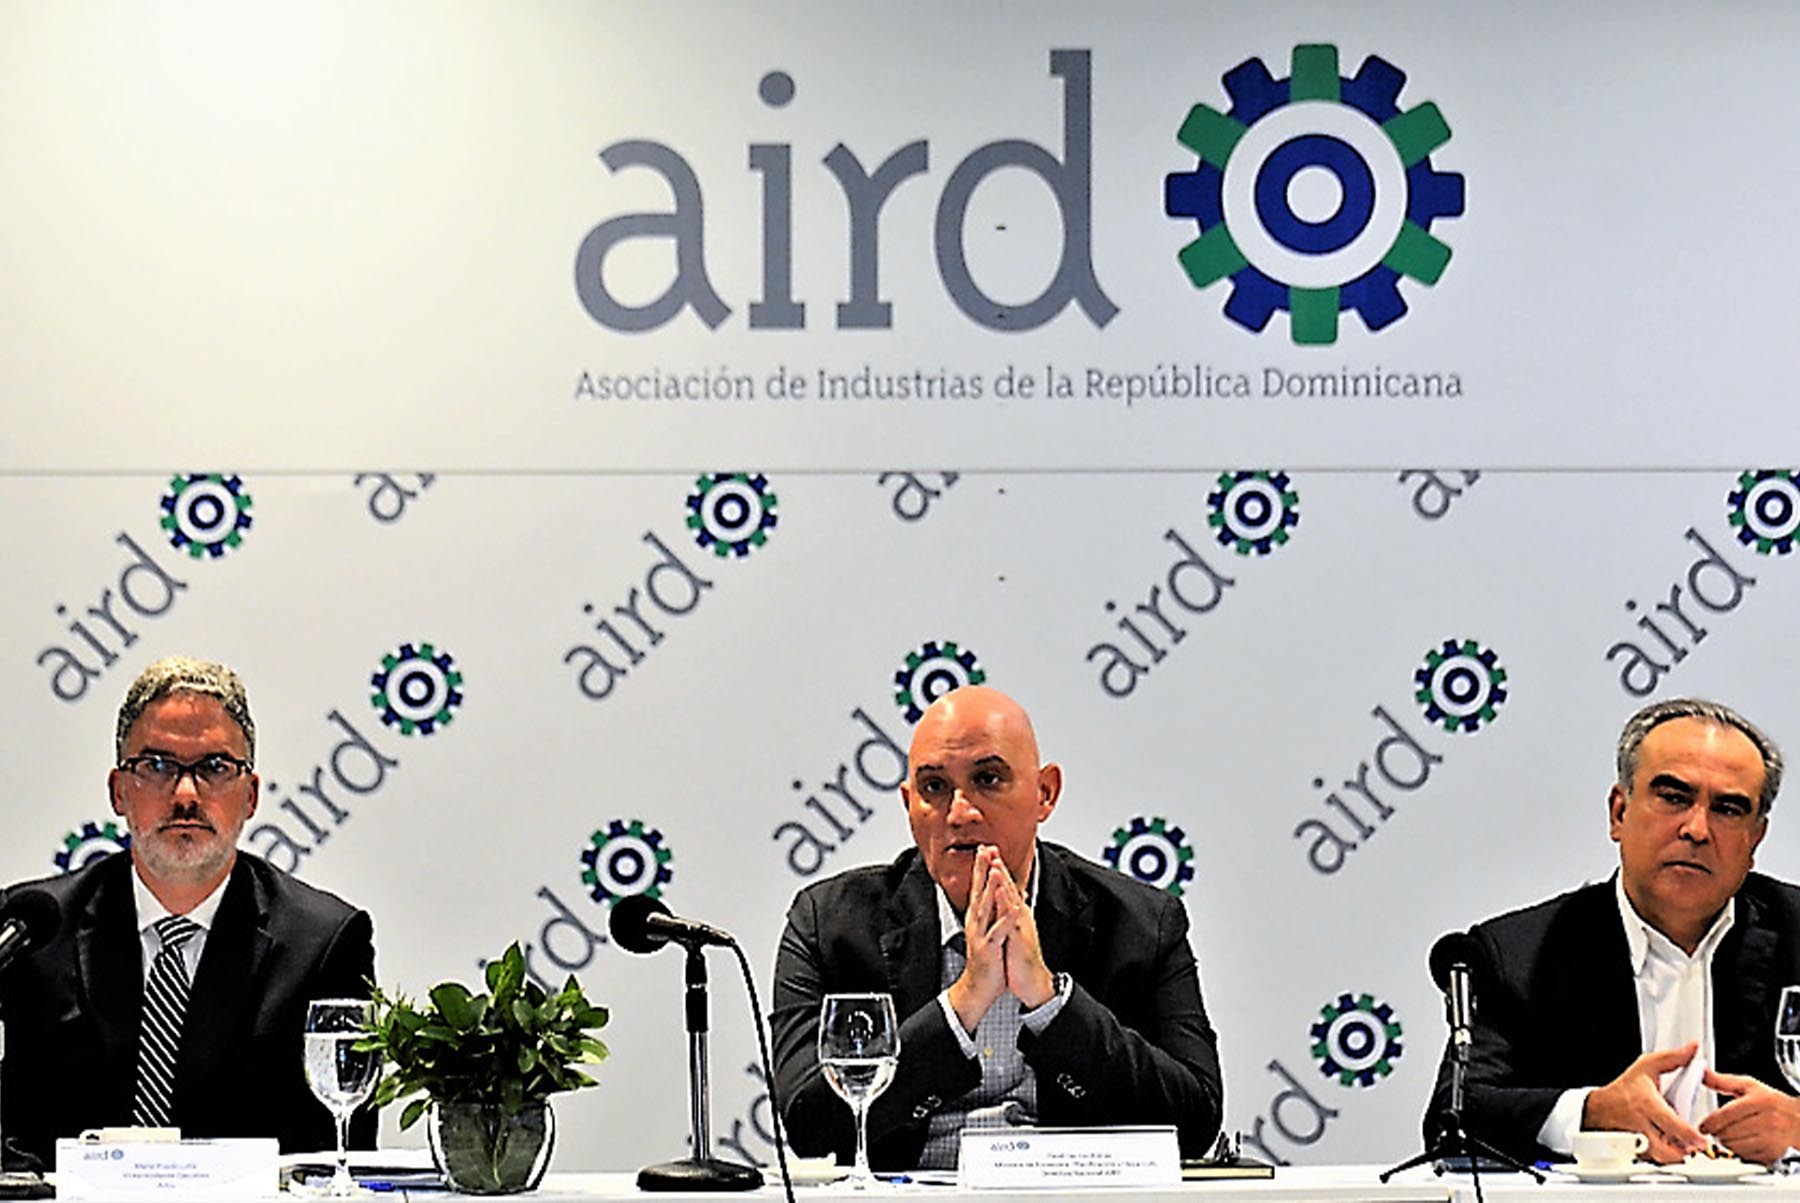 Al centro, Pável Isa Contreras, ministro de Economía, Planificación y Desarrollo junto a los miembros del Comité Directivo de la Asociación de Industrias de la República Dominicana (AIRD).